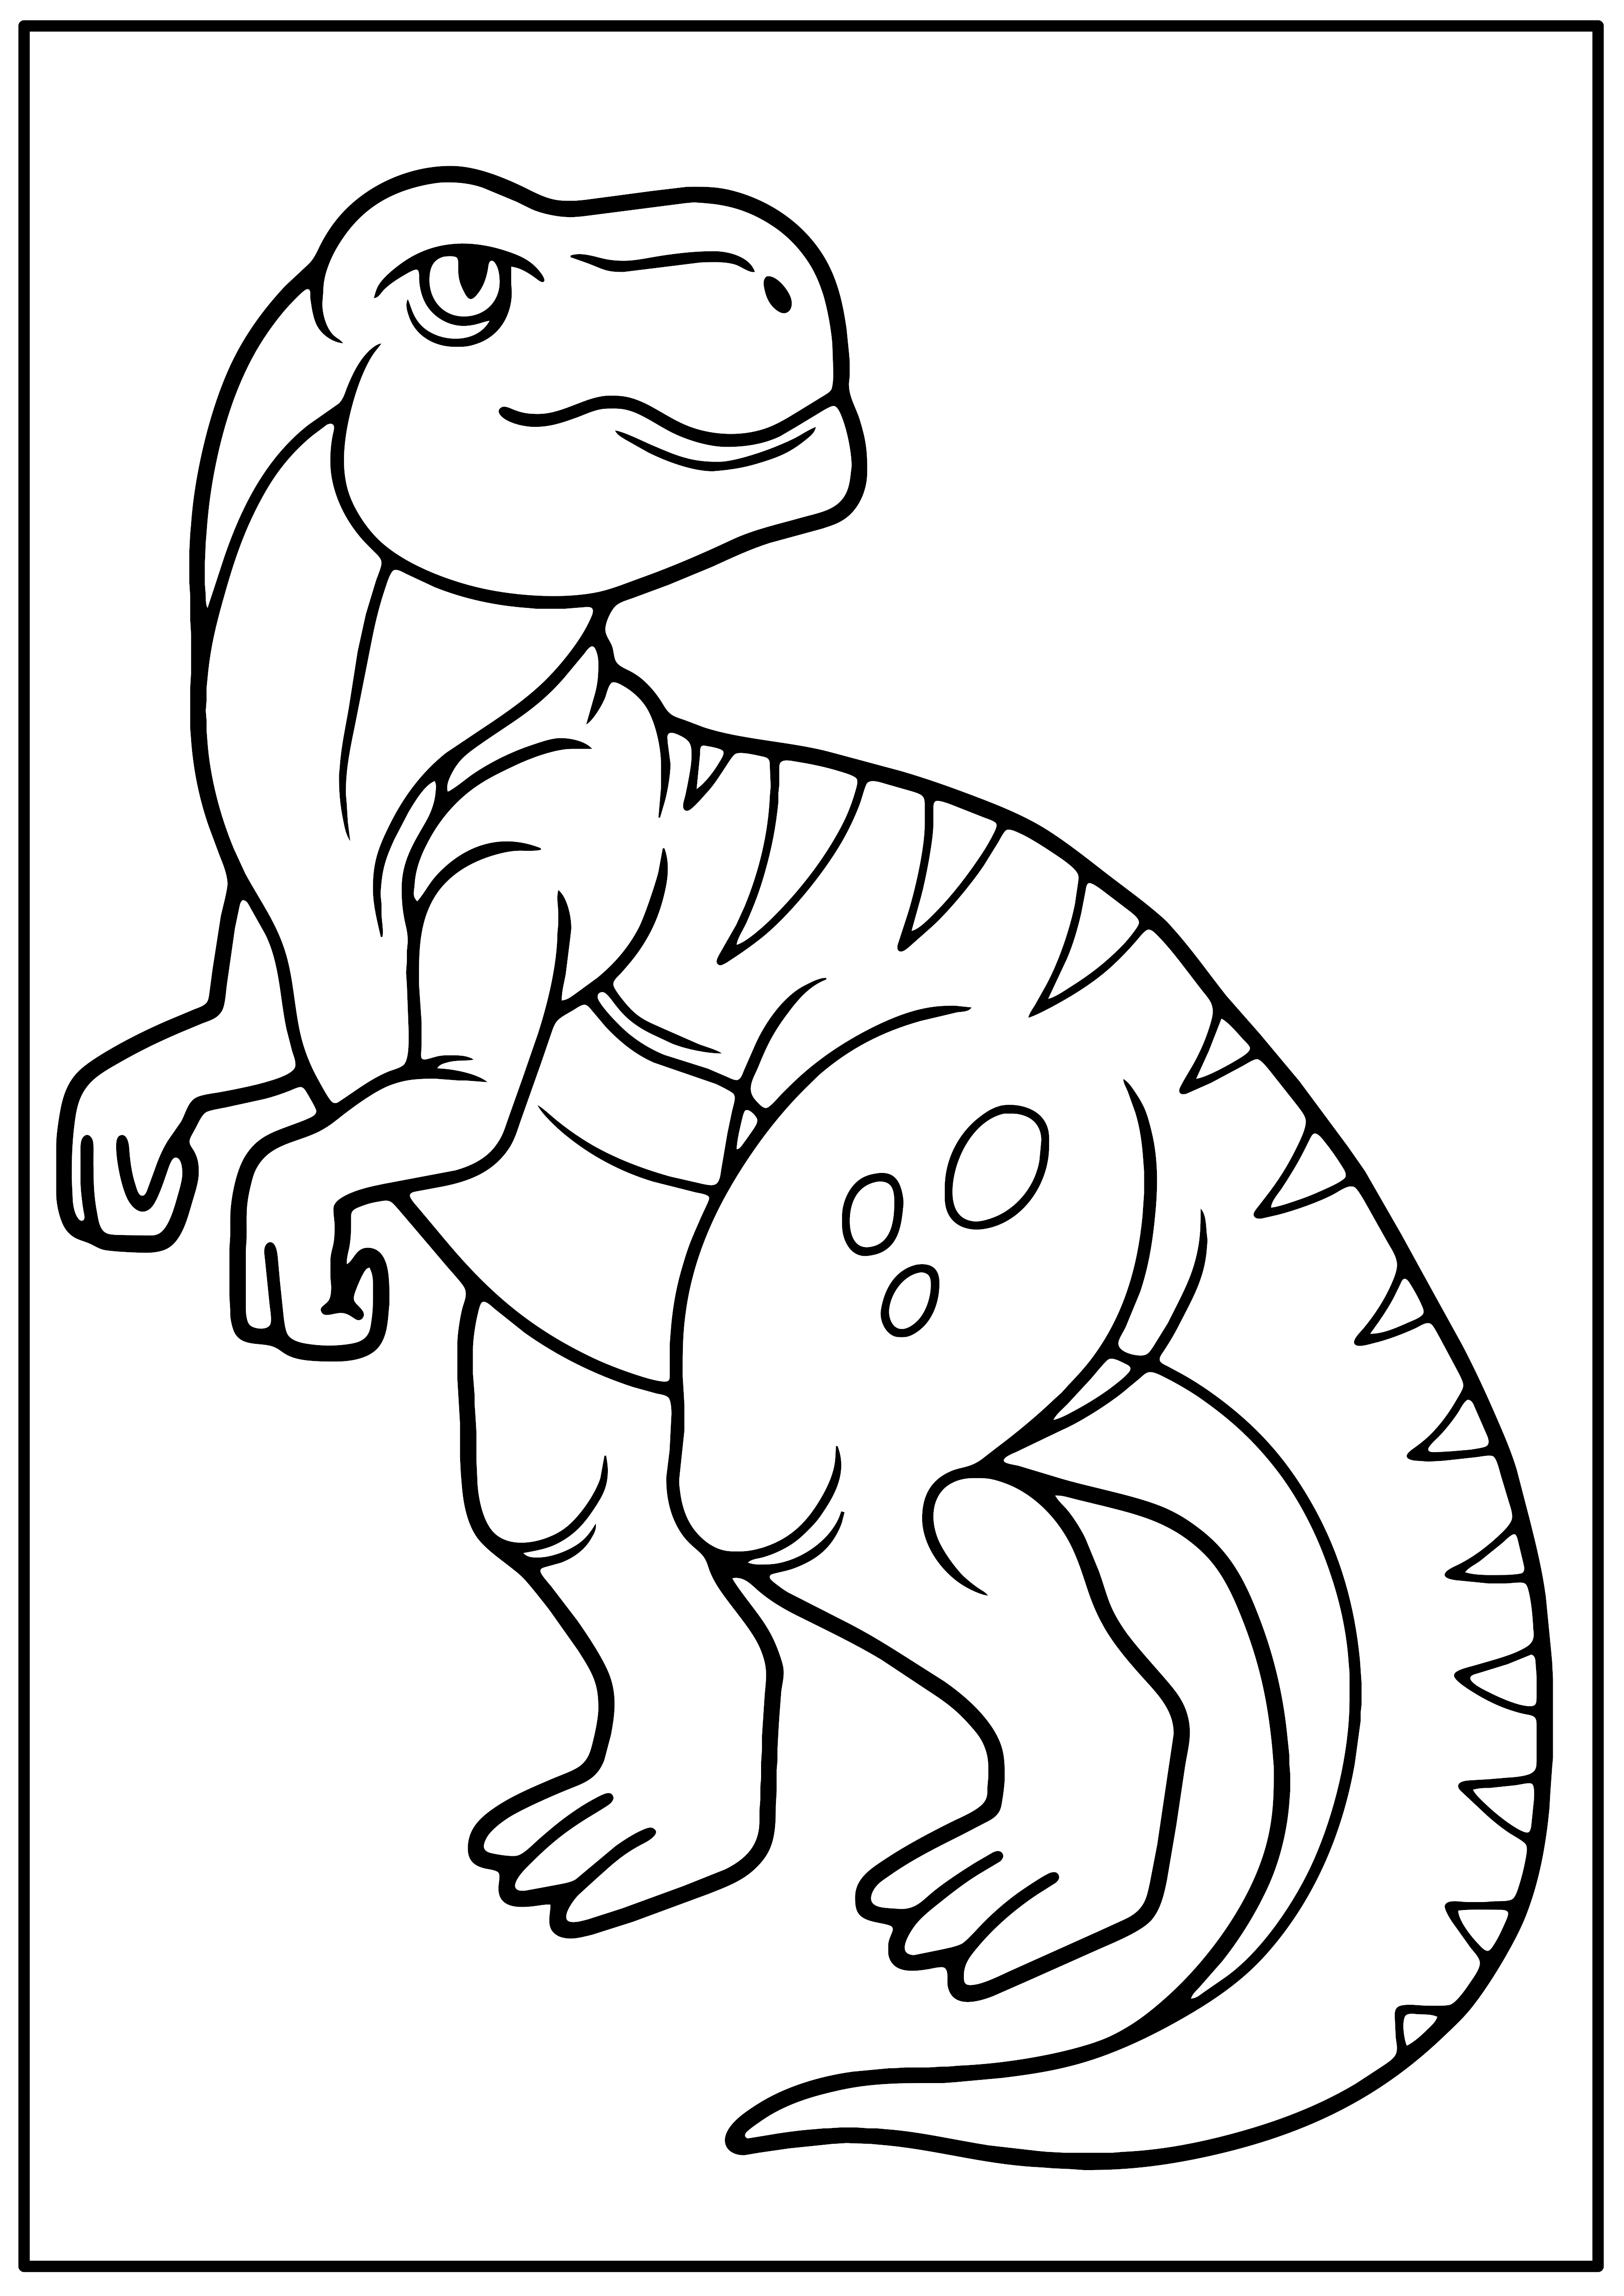 A4 Malvorlage Malvorlagen Ausmalen top10baas Farbe fur Kinder HQ Hochwertig Dino Dinosaurier Trex T-Rex 8